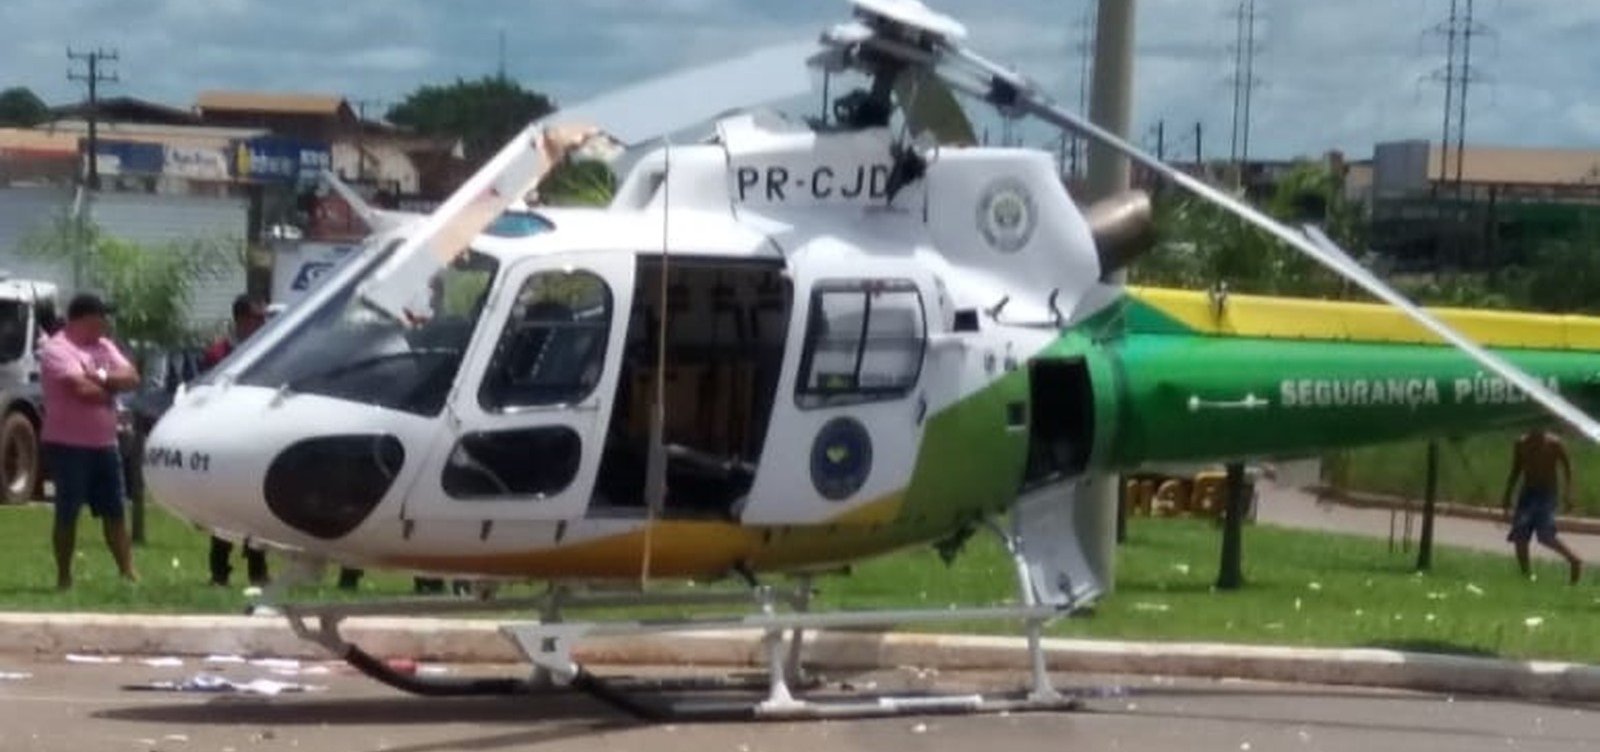 Hélice de helicóptero do Ciopaer bate em caminhão ao iniciar decolagem em Rio Branco